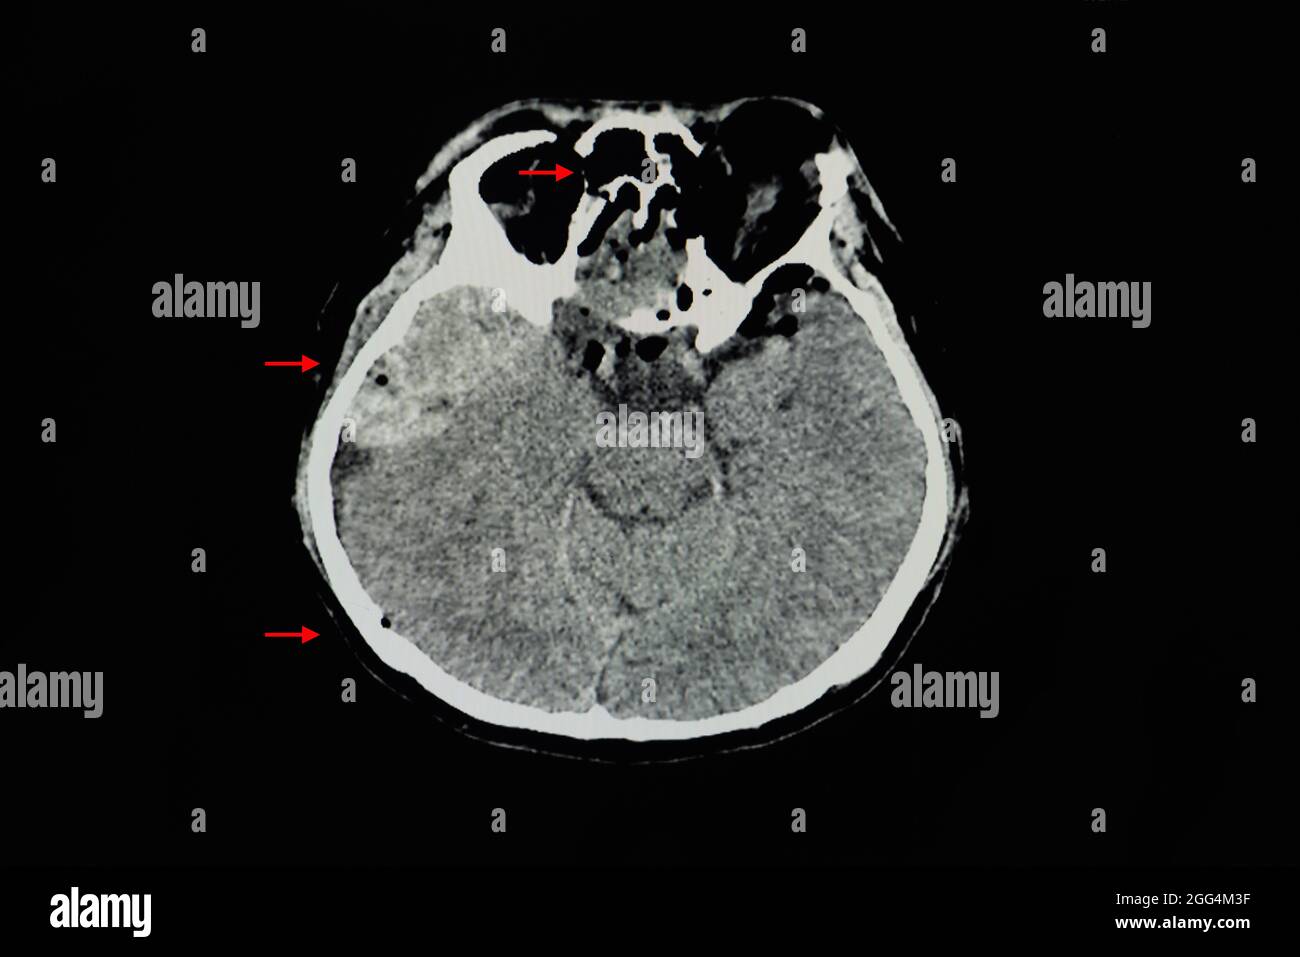 Ein CT-Hirnscan eines Patienten mit epiduralem Hämatom bei rechter temporaler Konvexität mit Masseneffekt. Spannung des Pneumocepals. Mehrere Gesichts-, Nasennebenhöhlen, ein Stockfoto